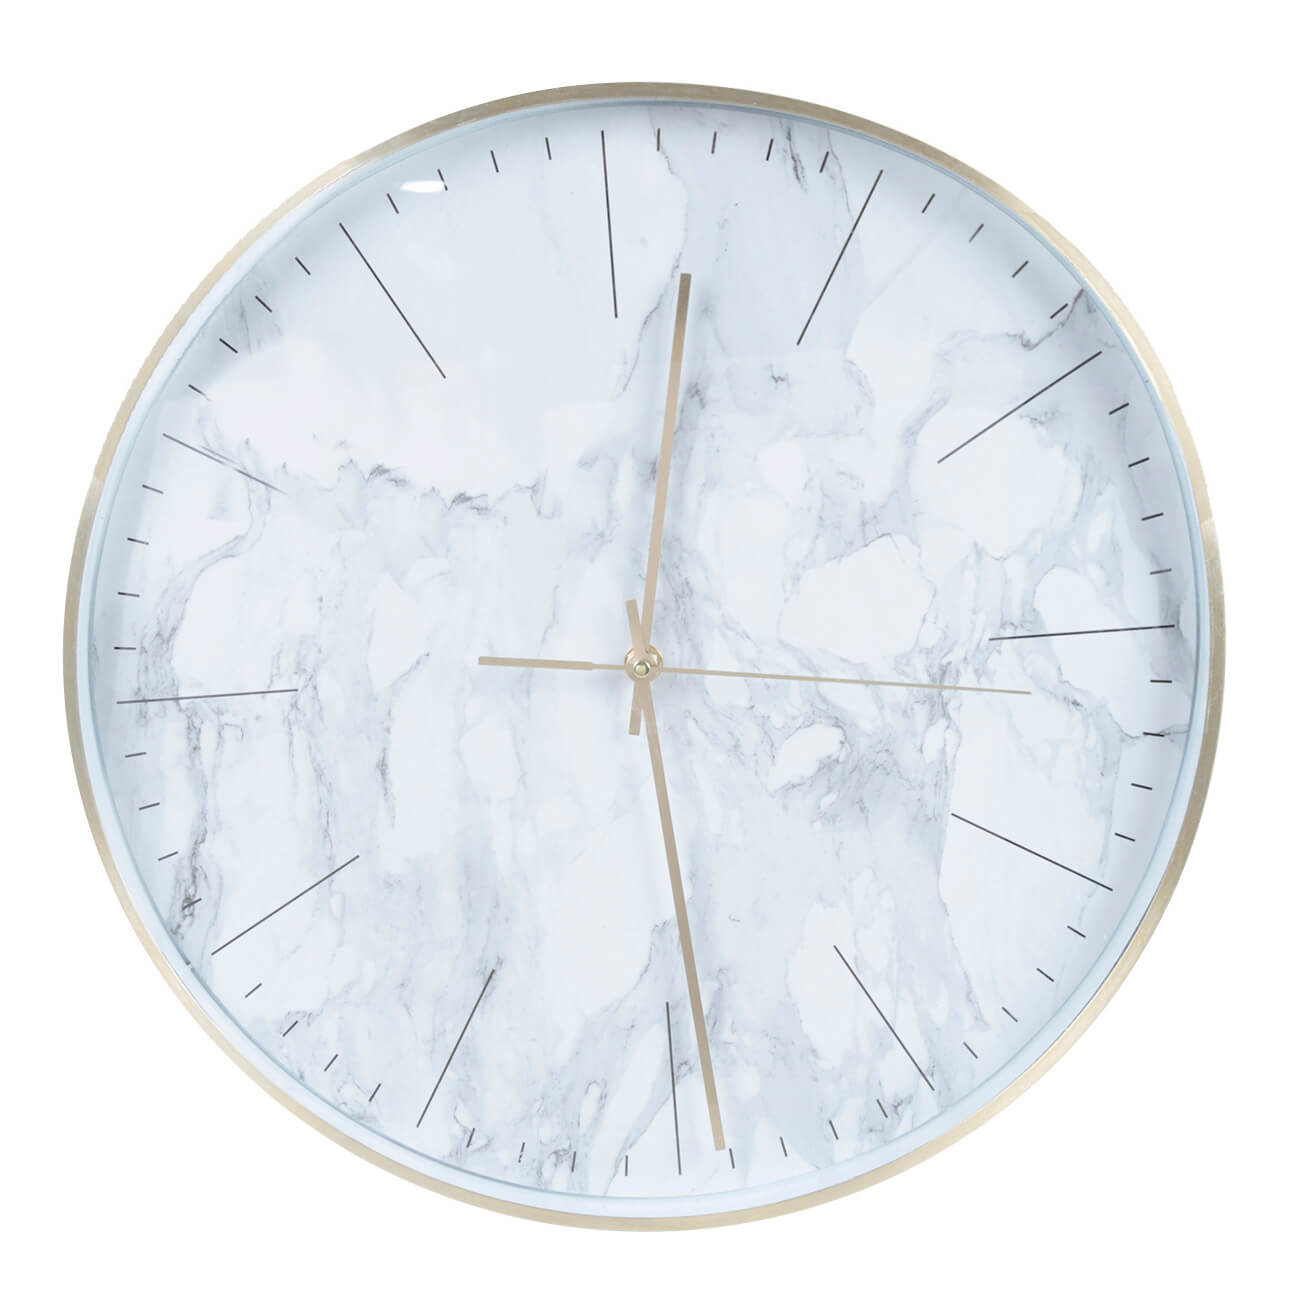 Часы настенные, 40 см, пластик/стекло, круглые, белые, Мрамор, Maniera часы настенные xy166822